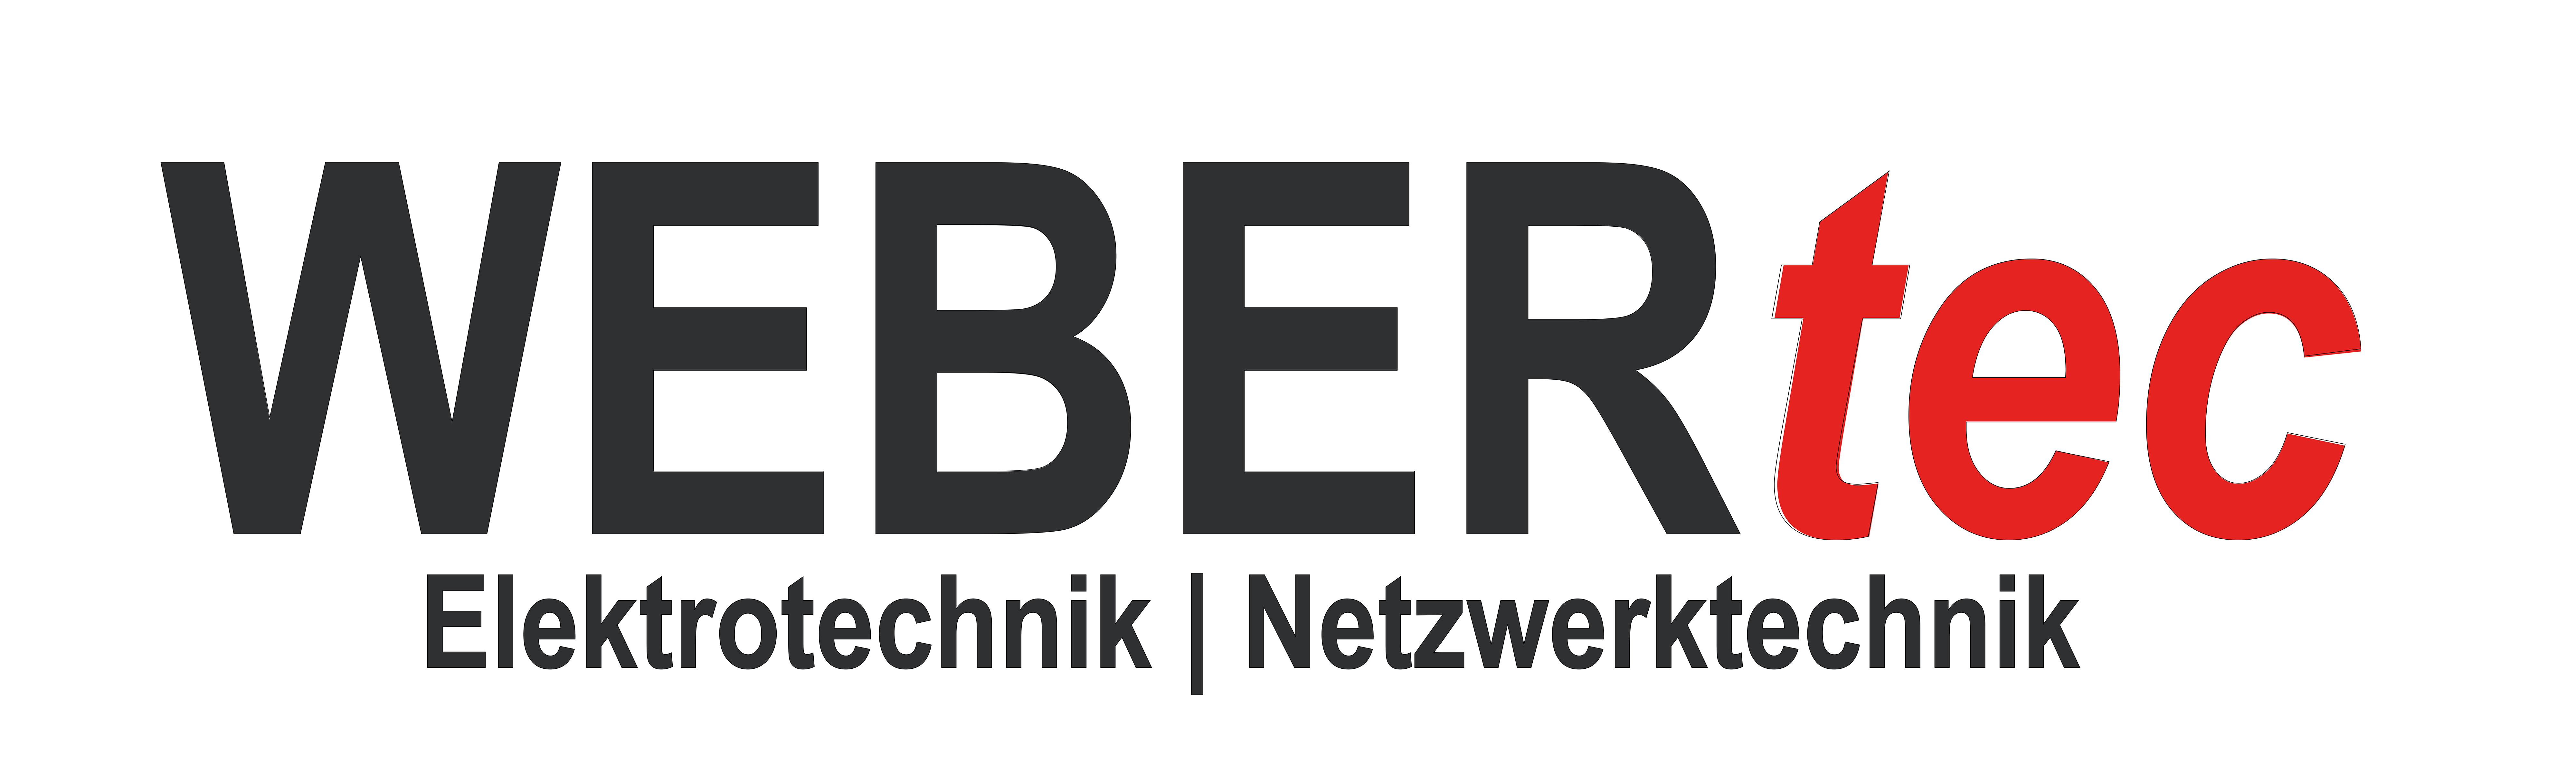 (c) Webertec-elektrotechnik.de